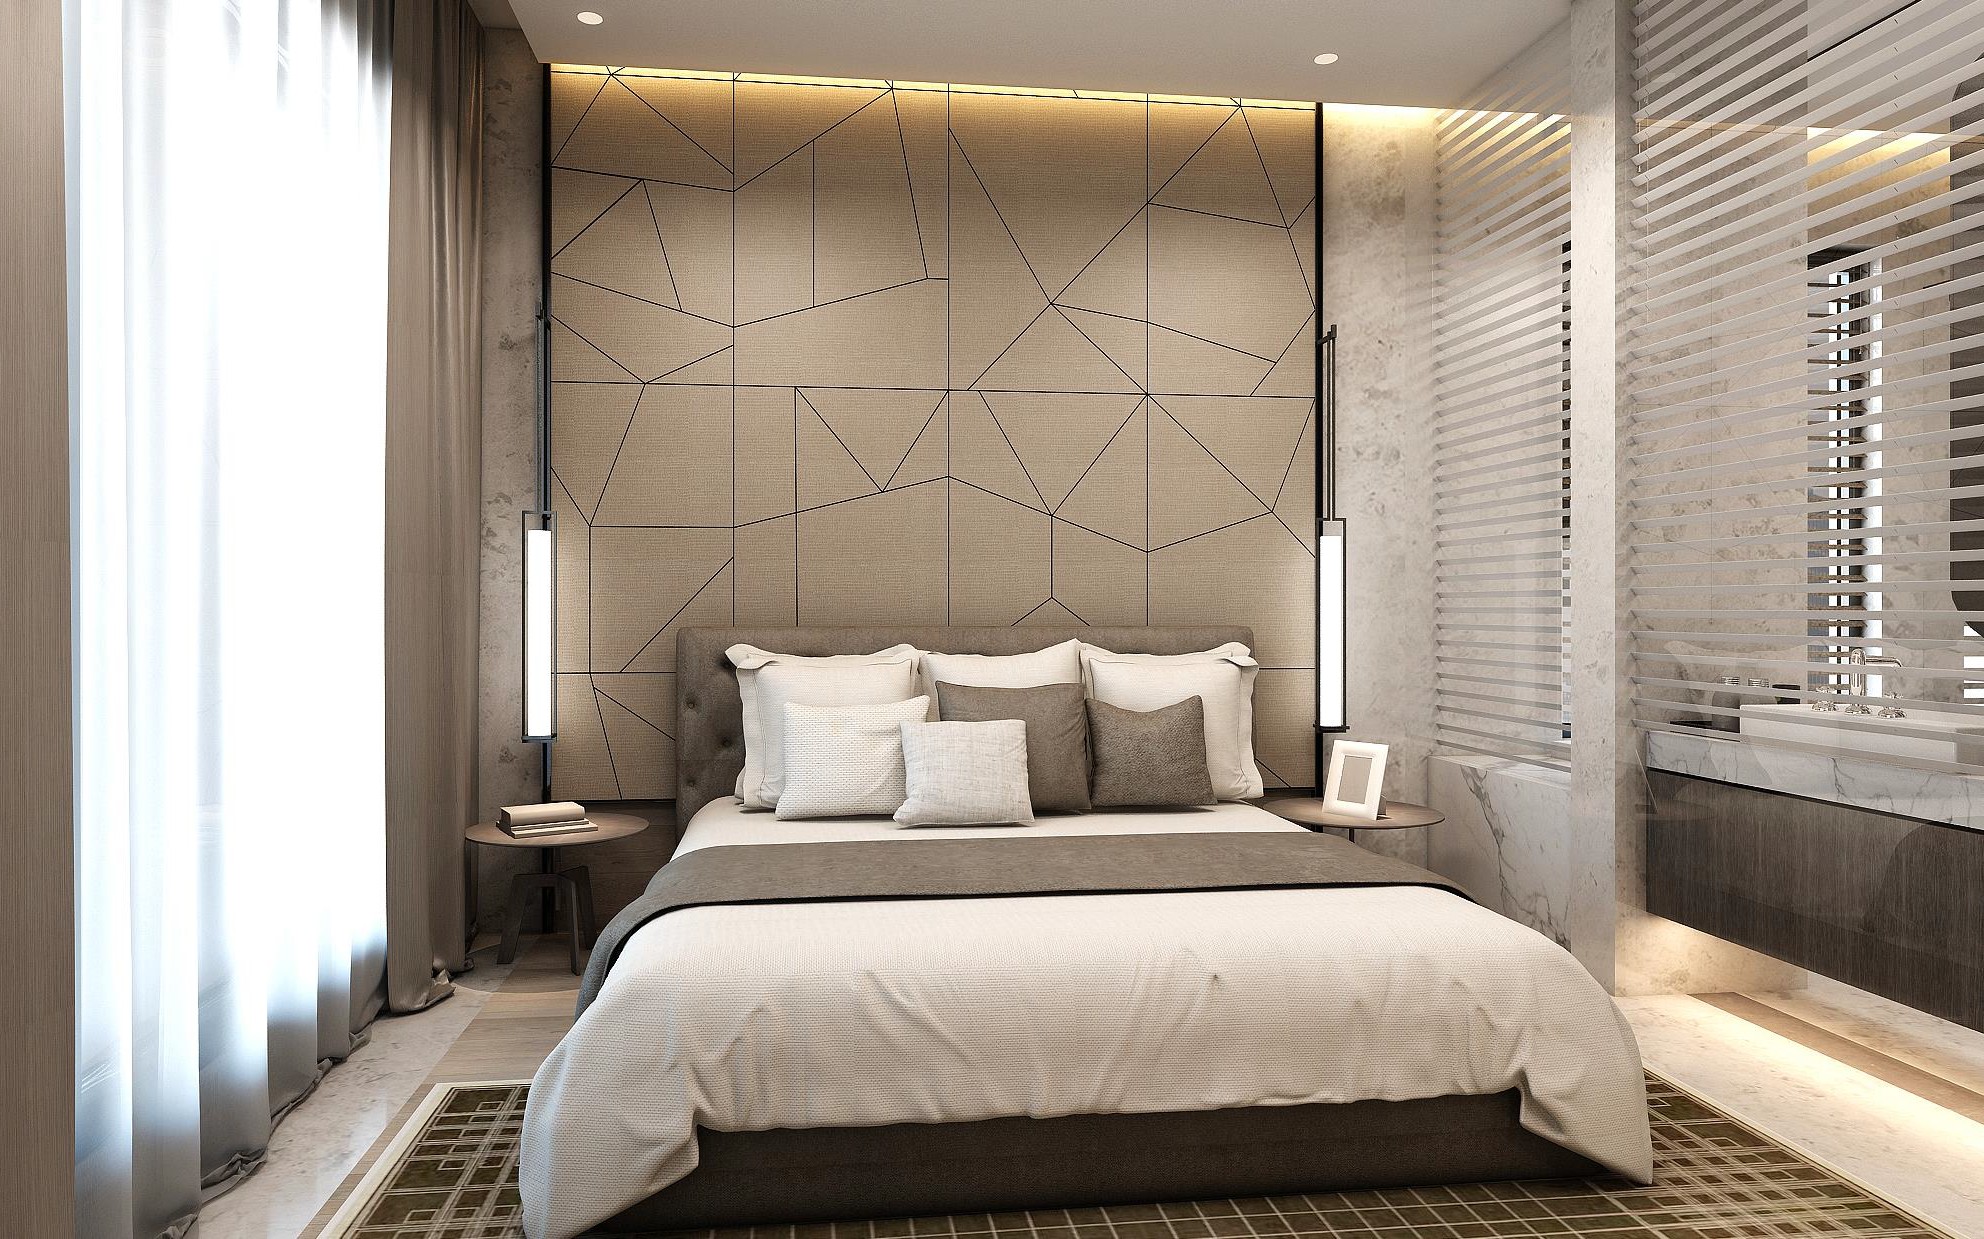 无主灯设计手法让空间显得十分干净，卧室背景墙线条感强烈，增强空间动态美。